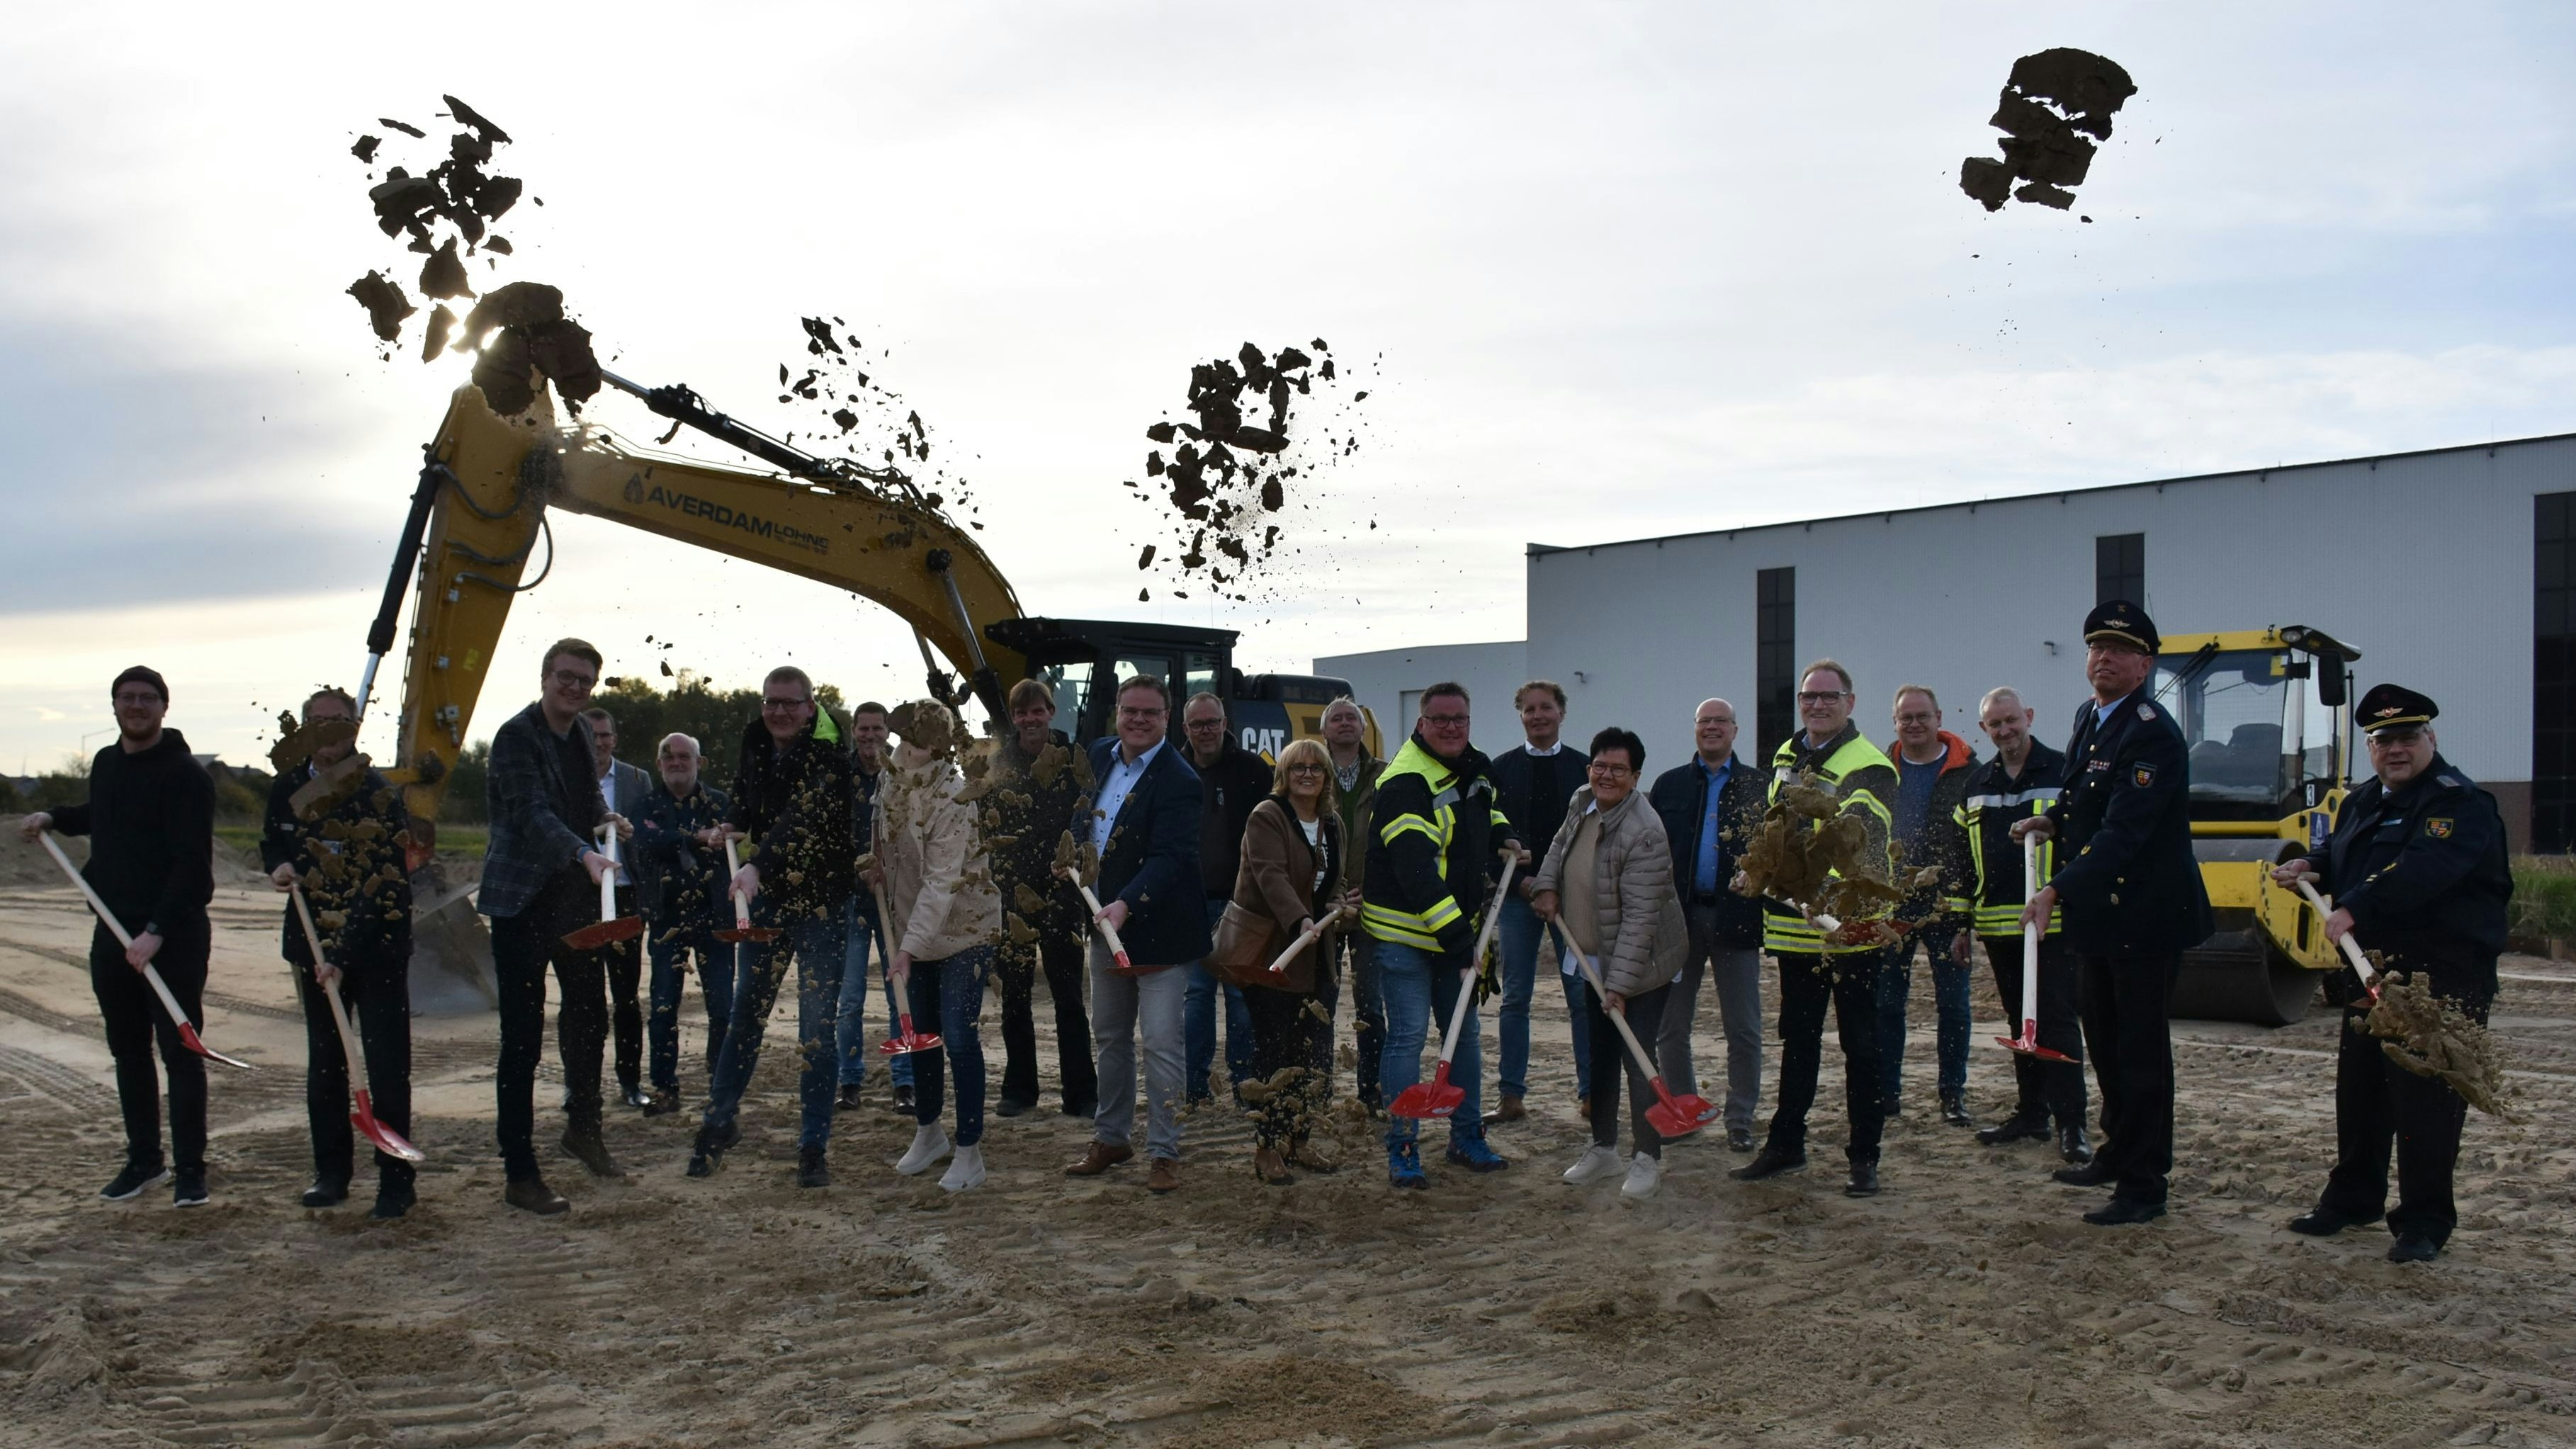 Lasst den Sand fliegen! Am offiziellen Spatenstich für das neue Feuerwehrhaus Brockdorf nahmen Vertreter aus Politik, der Feuerwehr sowie beteiligter Unternehmen teil. Foto: Timphaus